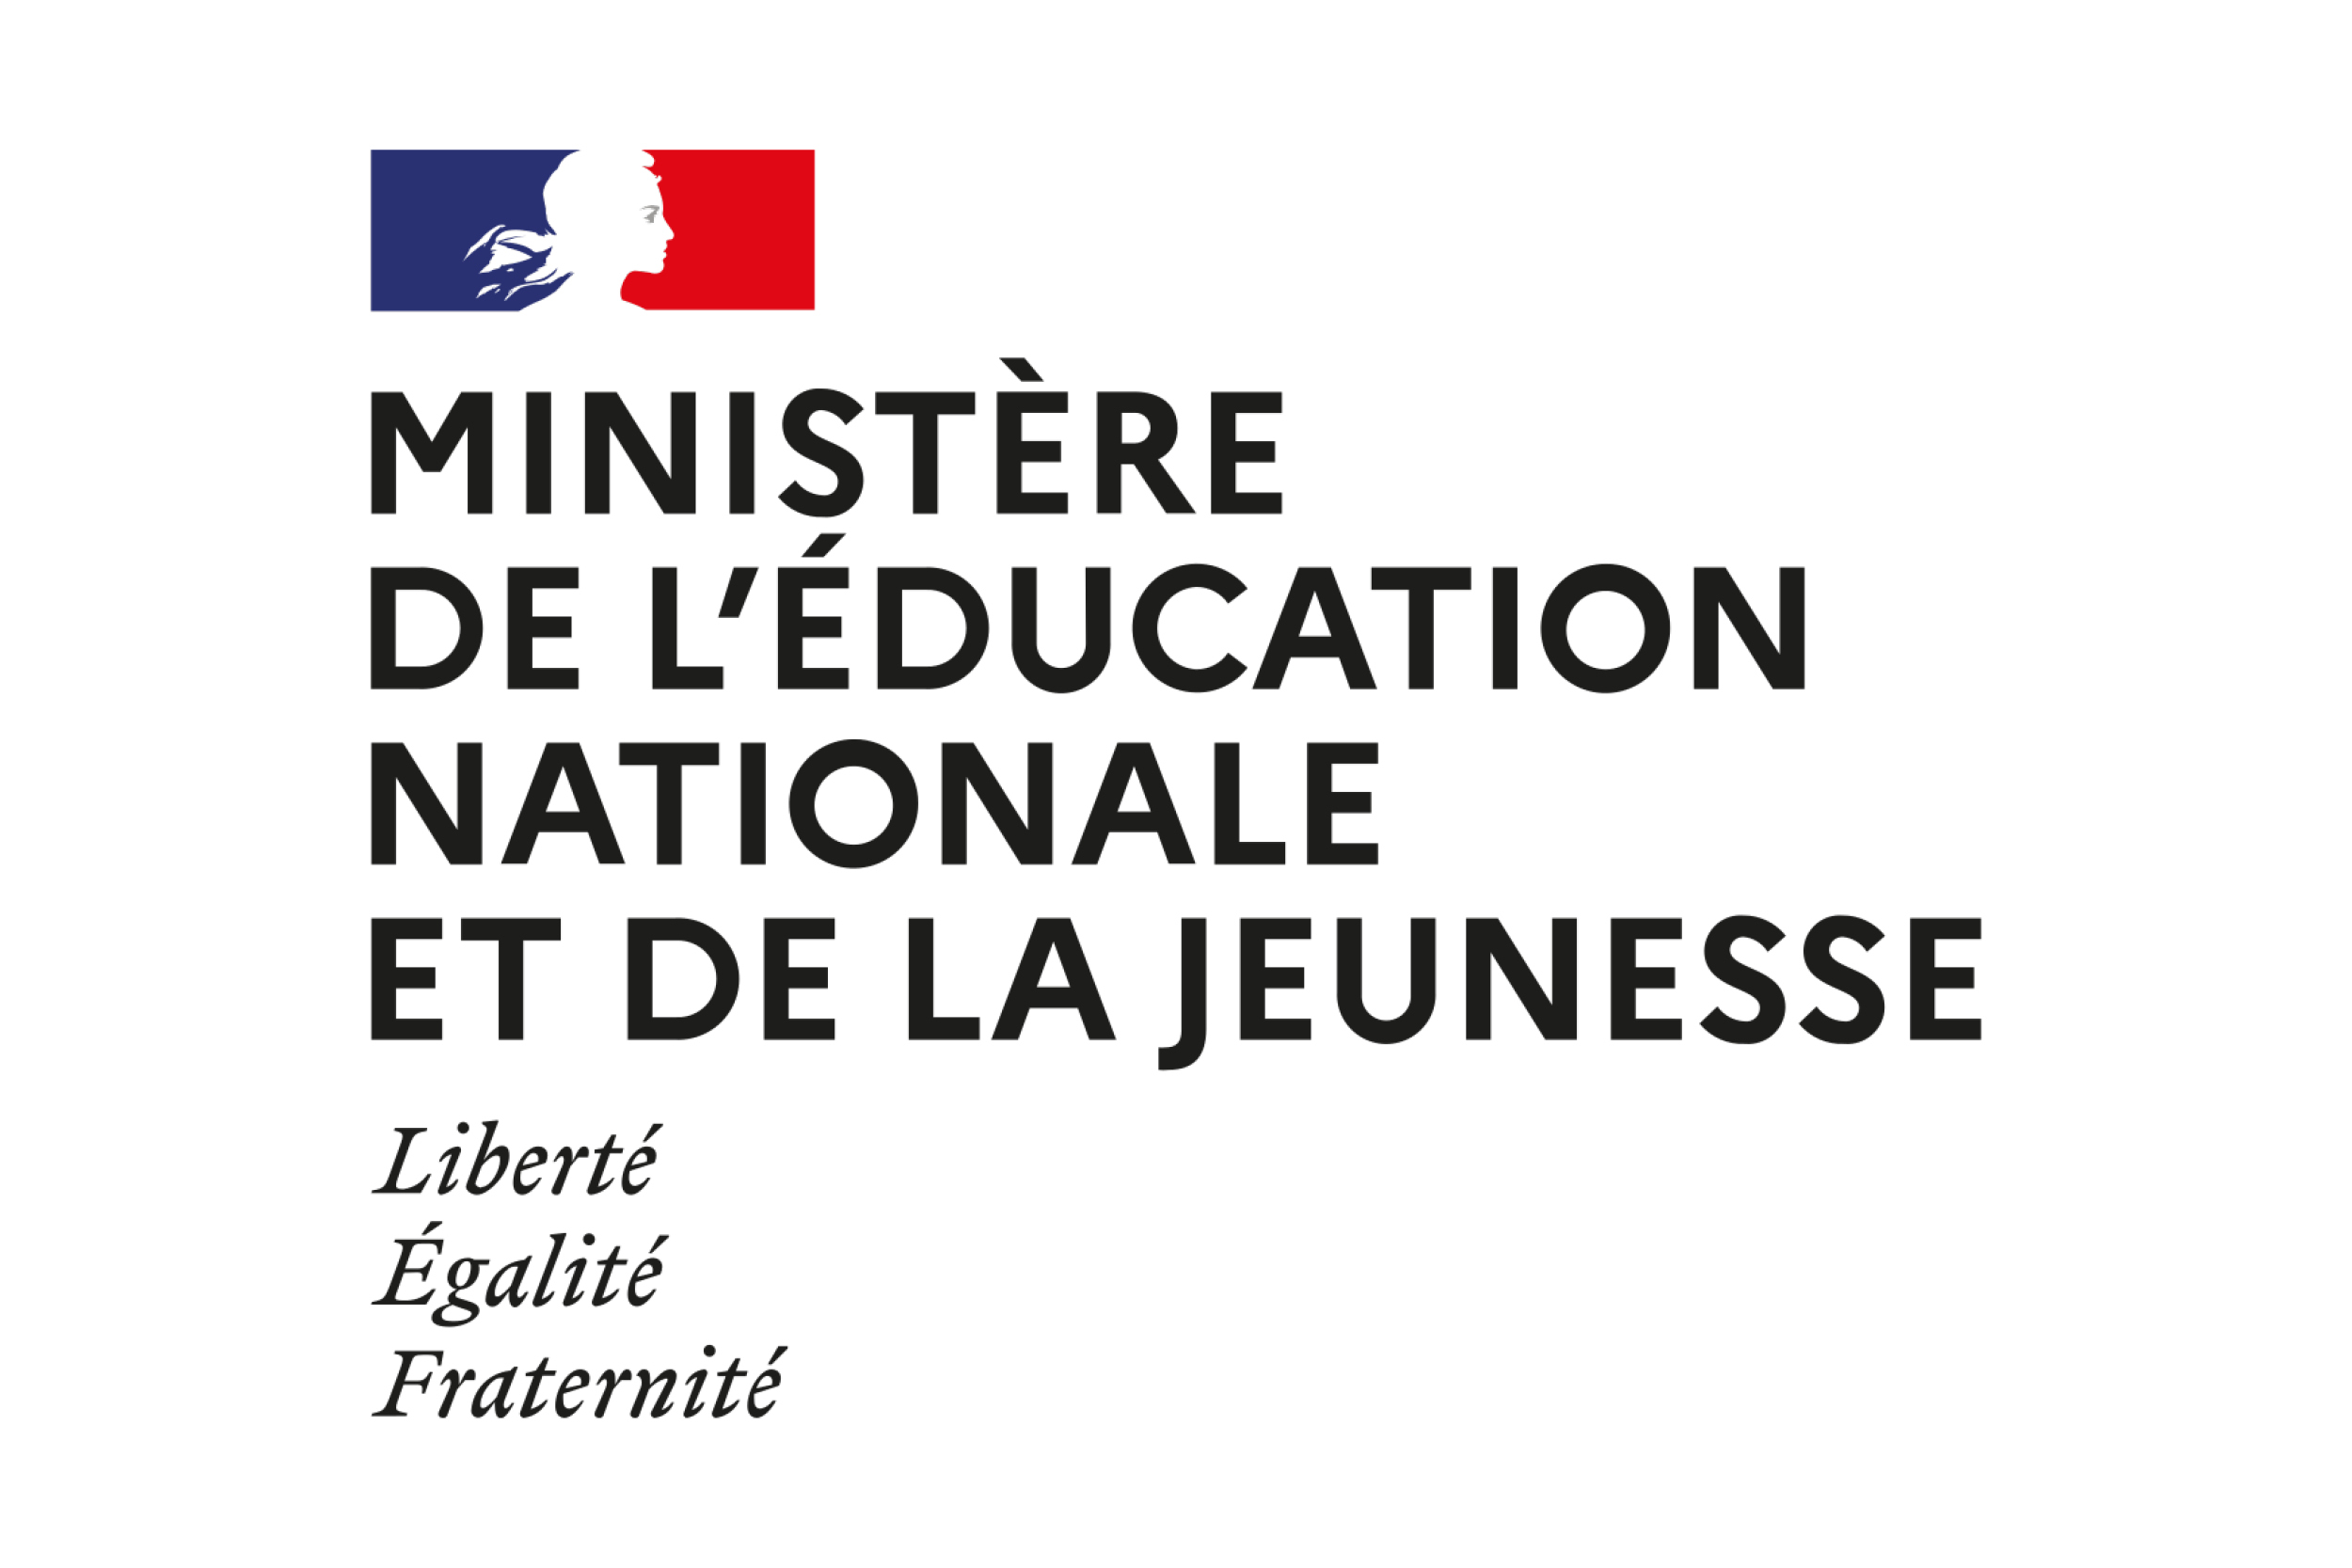 Ministère de l'éducation nationale et de la jeunesse logo